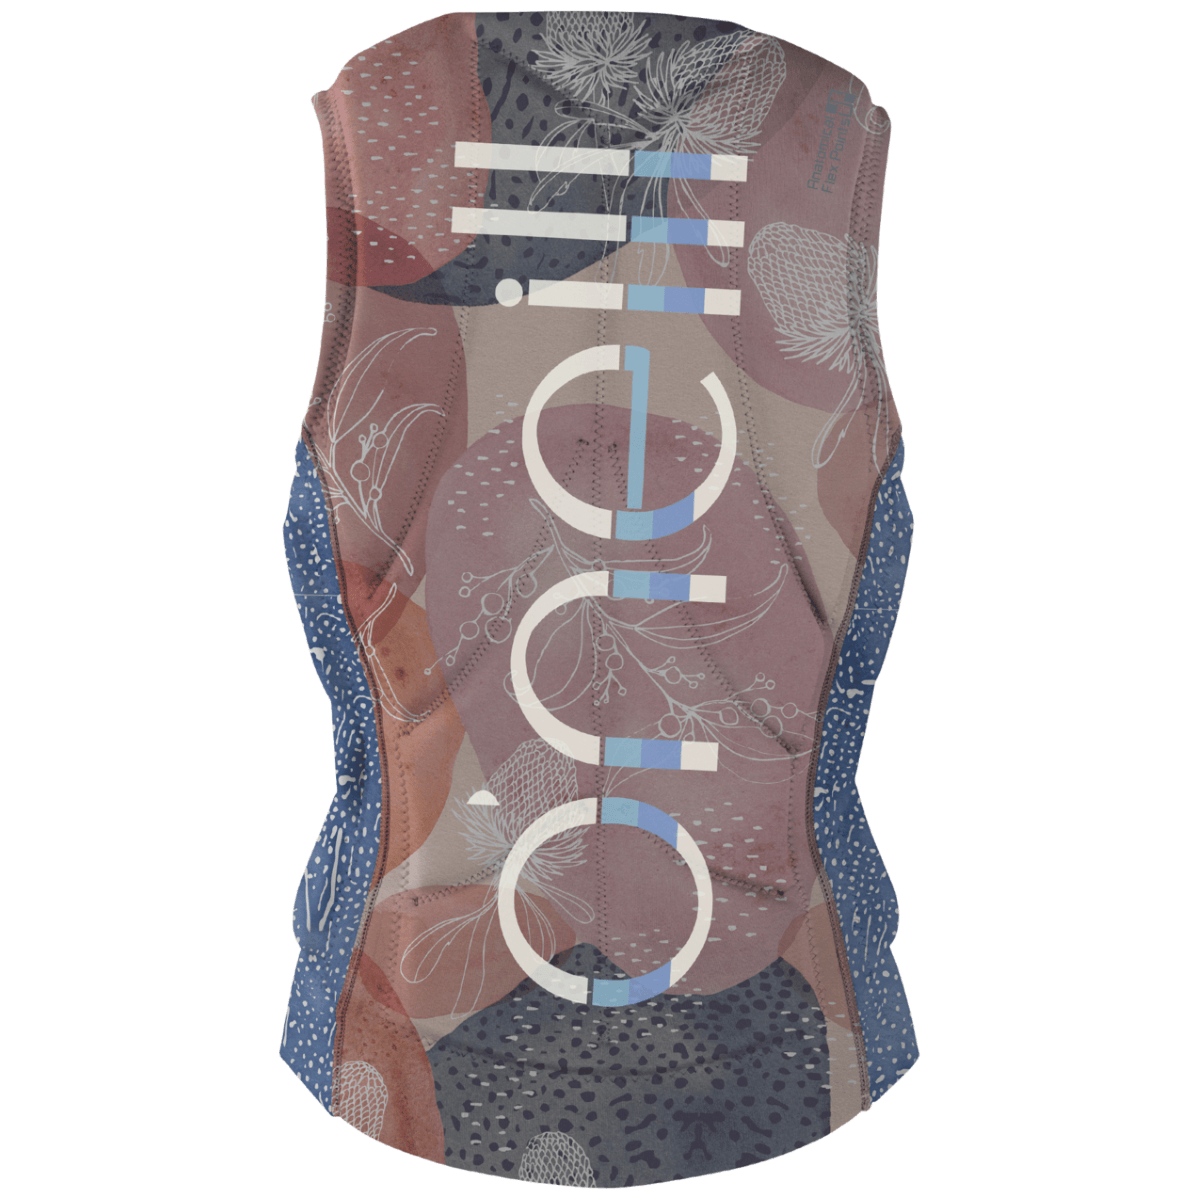 O'Neill Women's Slasher Comp Vest in Desert Bloom/Drift Blue - BoardCo